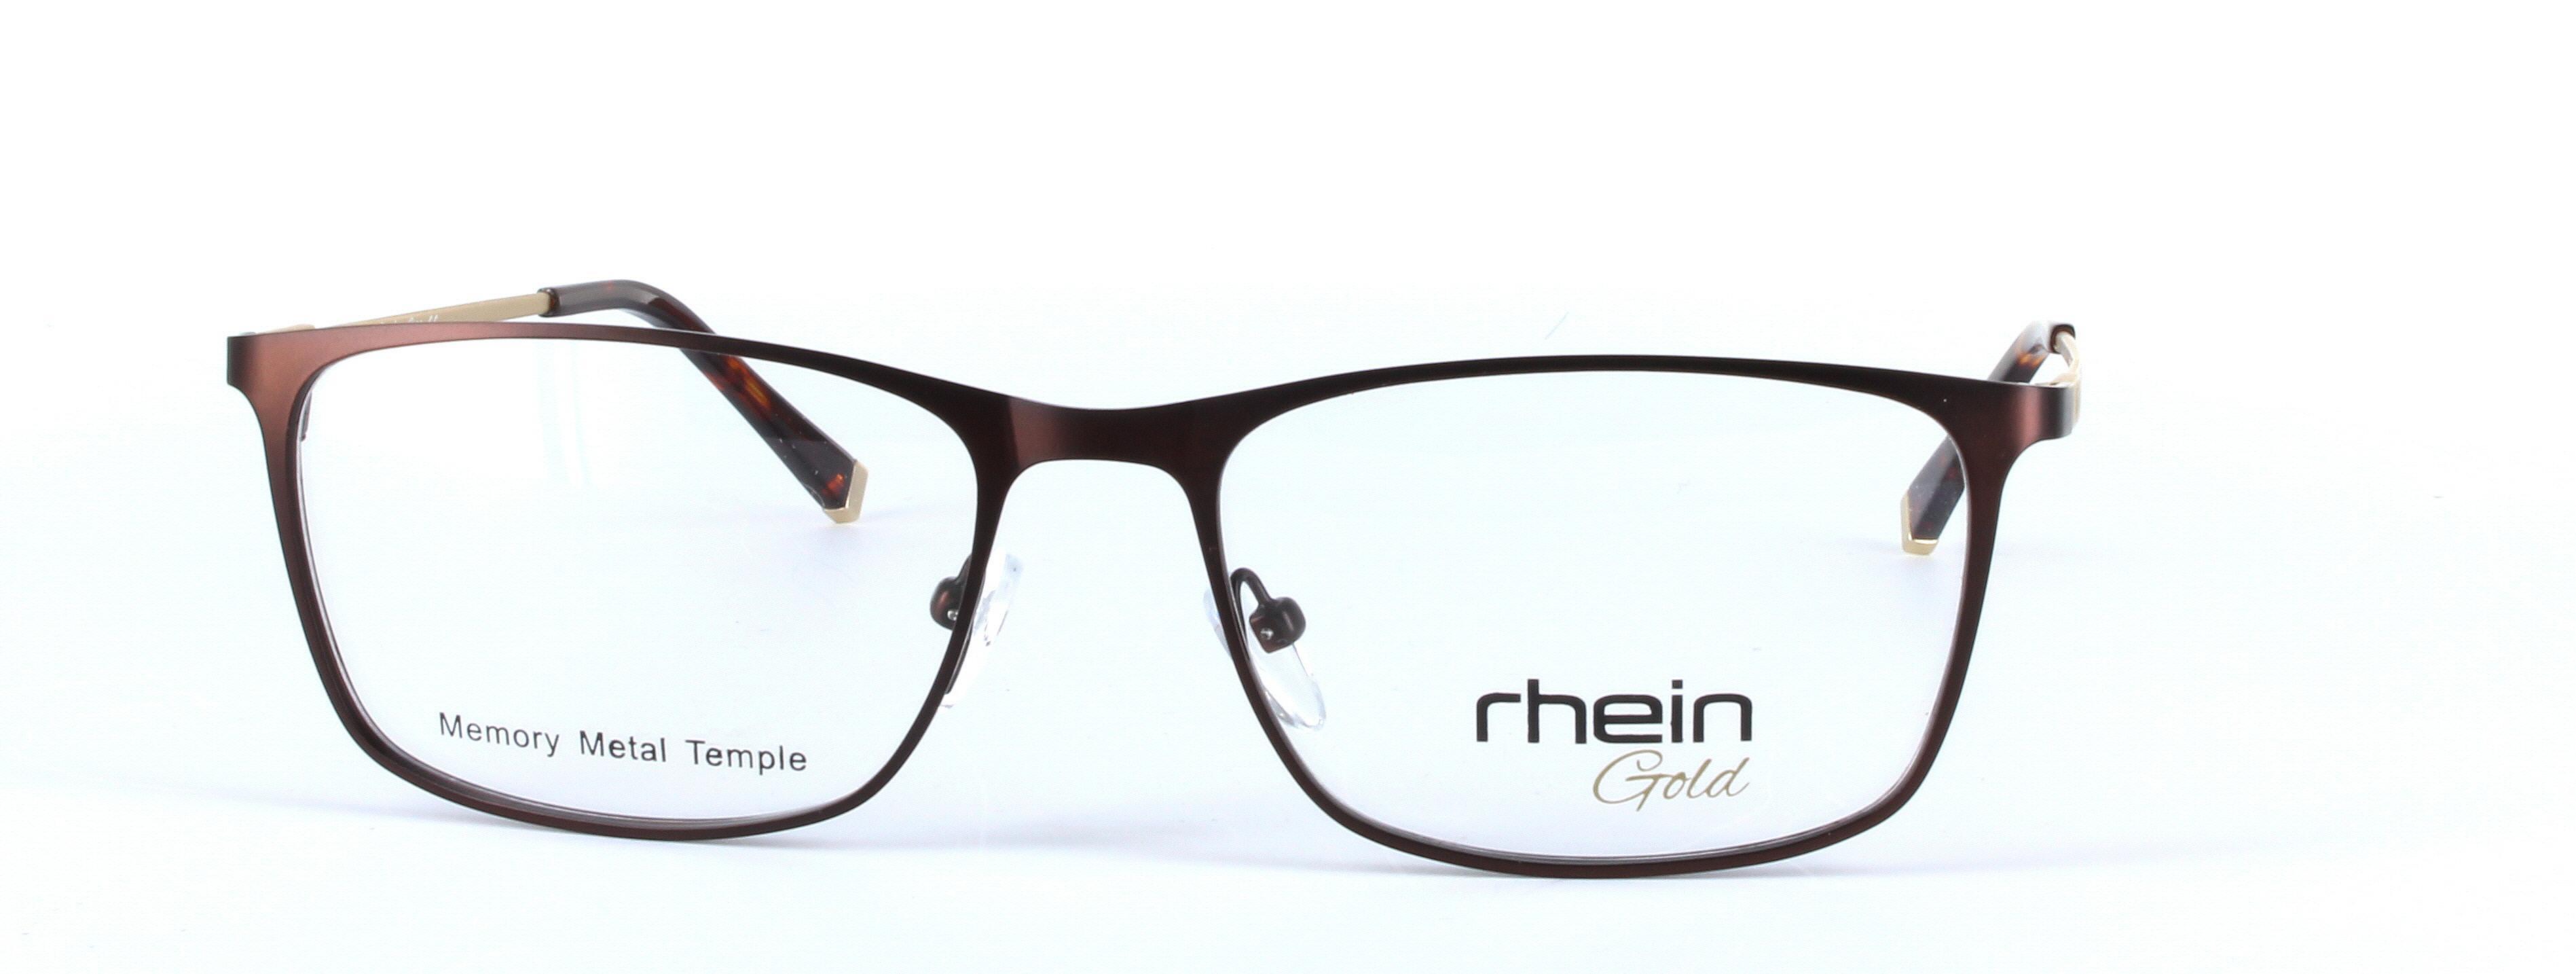 Canterbury Brown Full Rim Oval Rectangular Metal Glasses - Image View 5